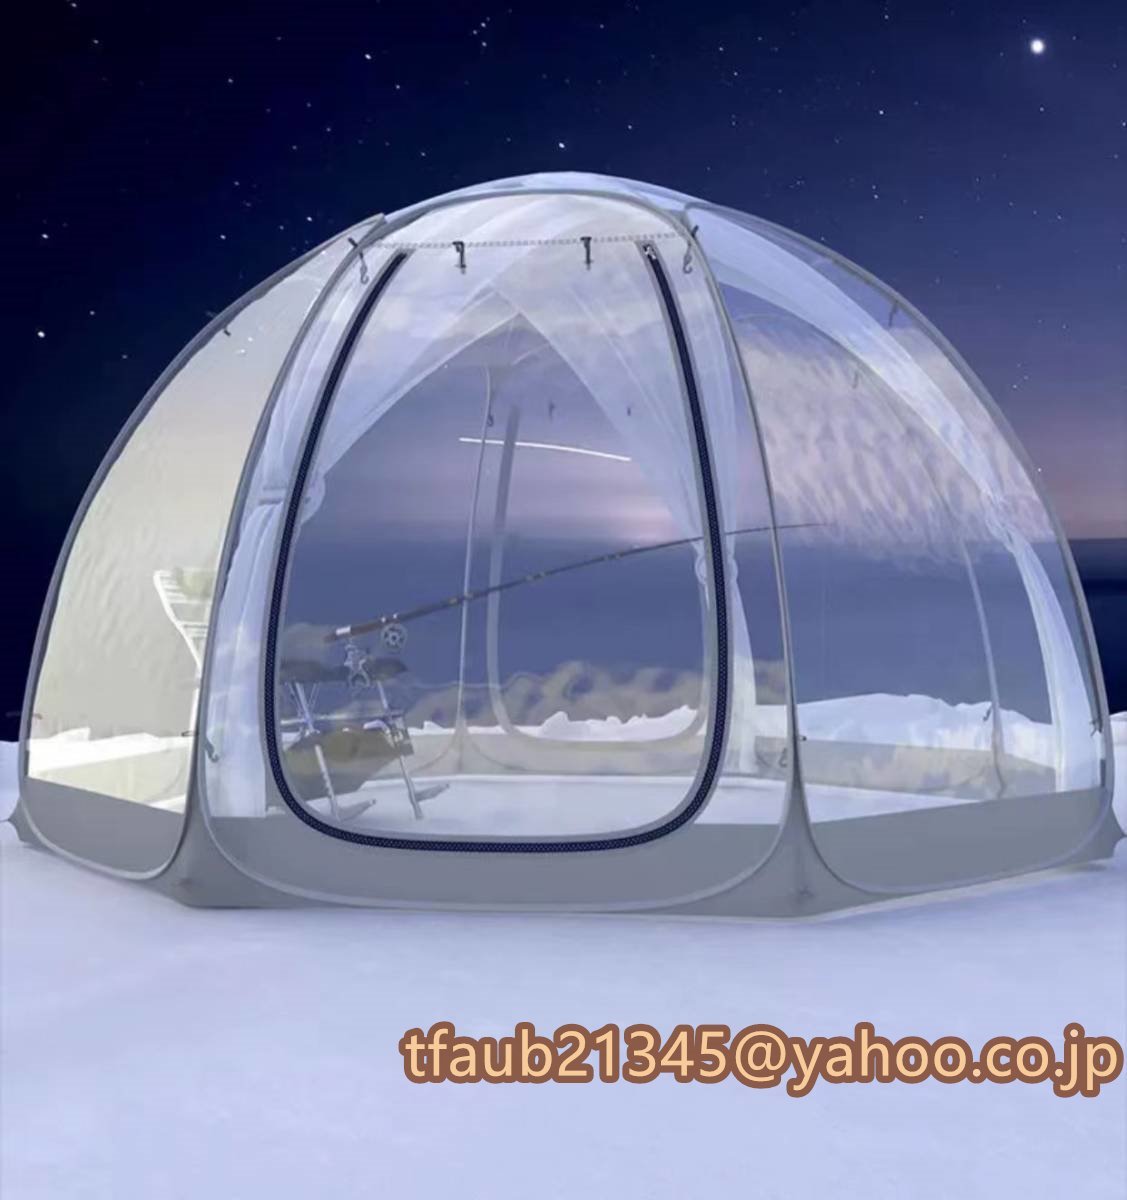 雨対策 テントアウトドアテント 防湿アウトドア 星空テント 2.6＊2.6＊2.2 m キャンプビーチ釣りテント 露天 透明